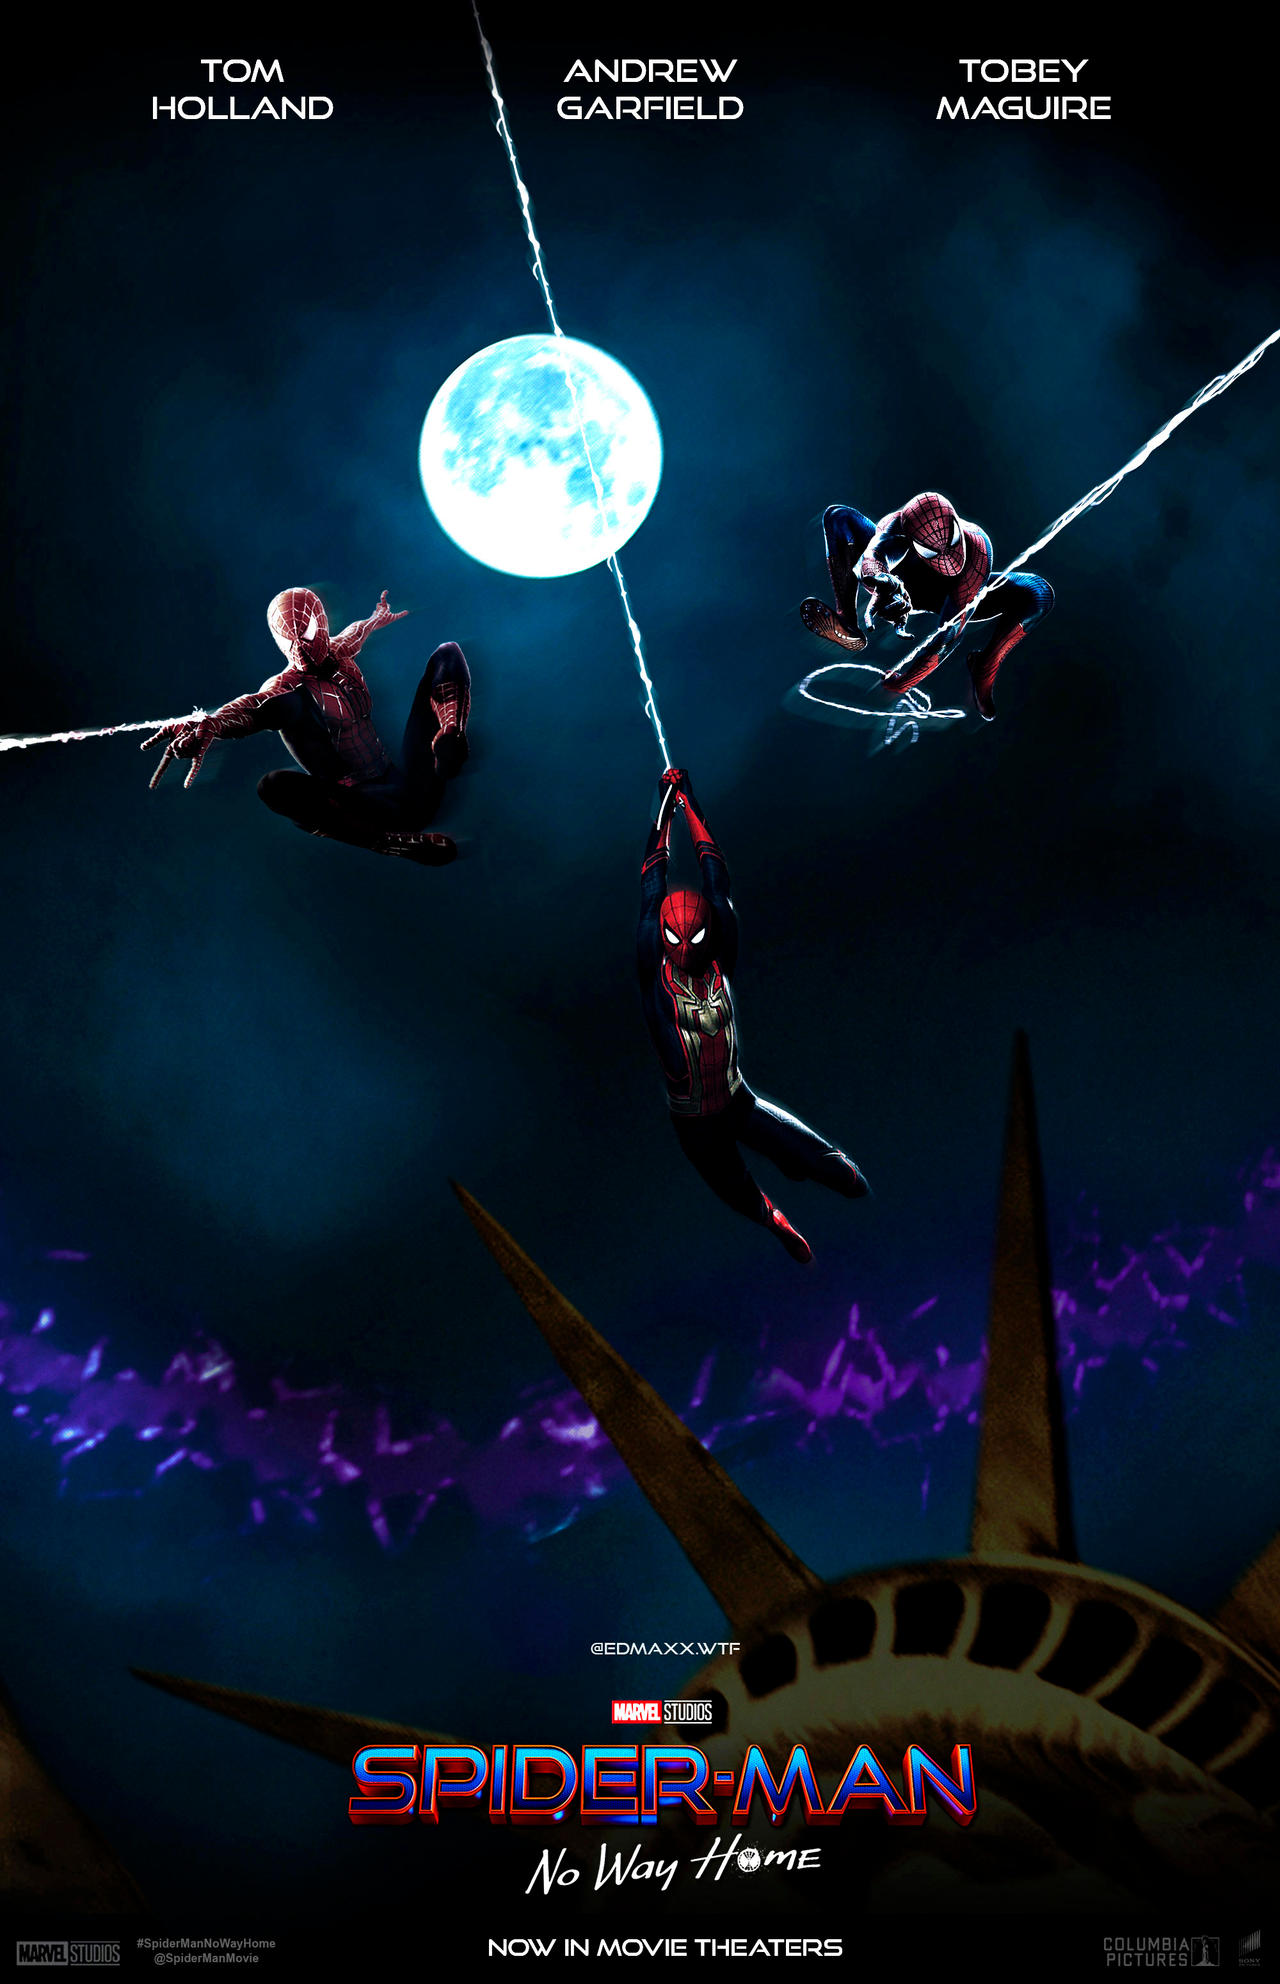 Spider-Man No Way Home Spider-Verse Poster by edmaxxwtf on DeviantArt